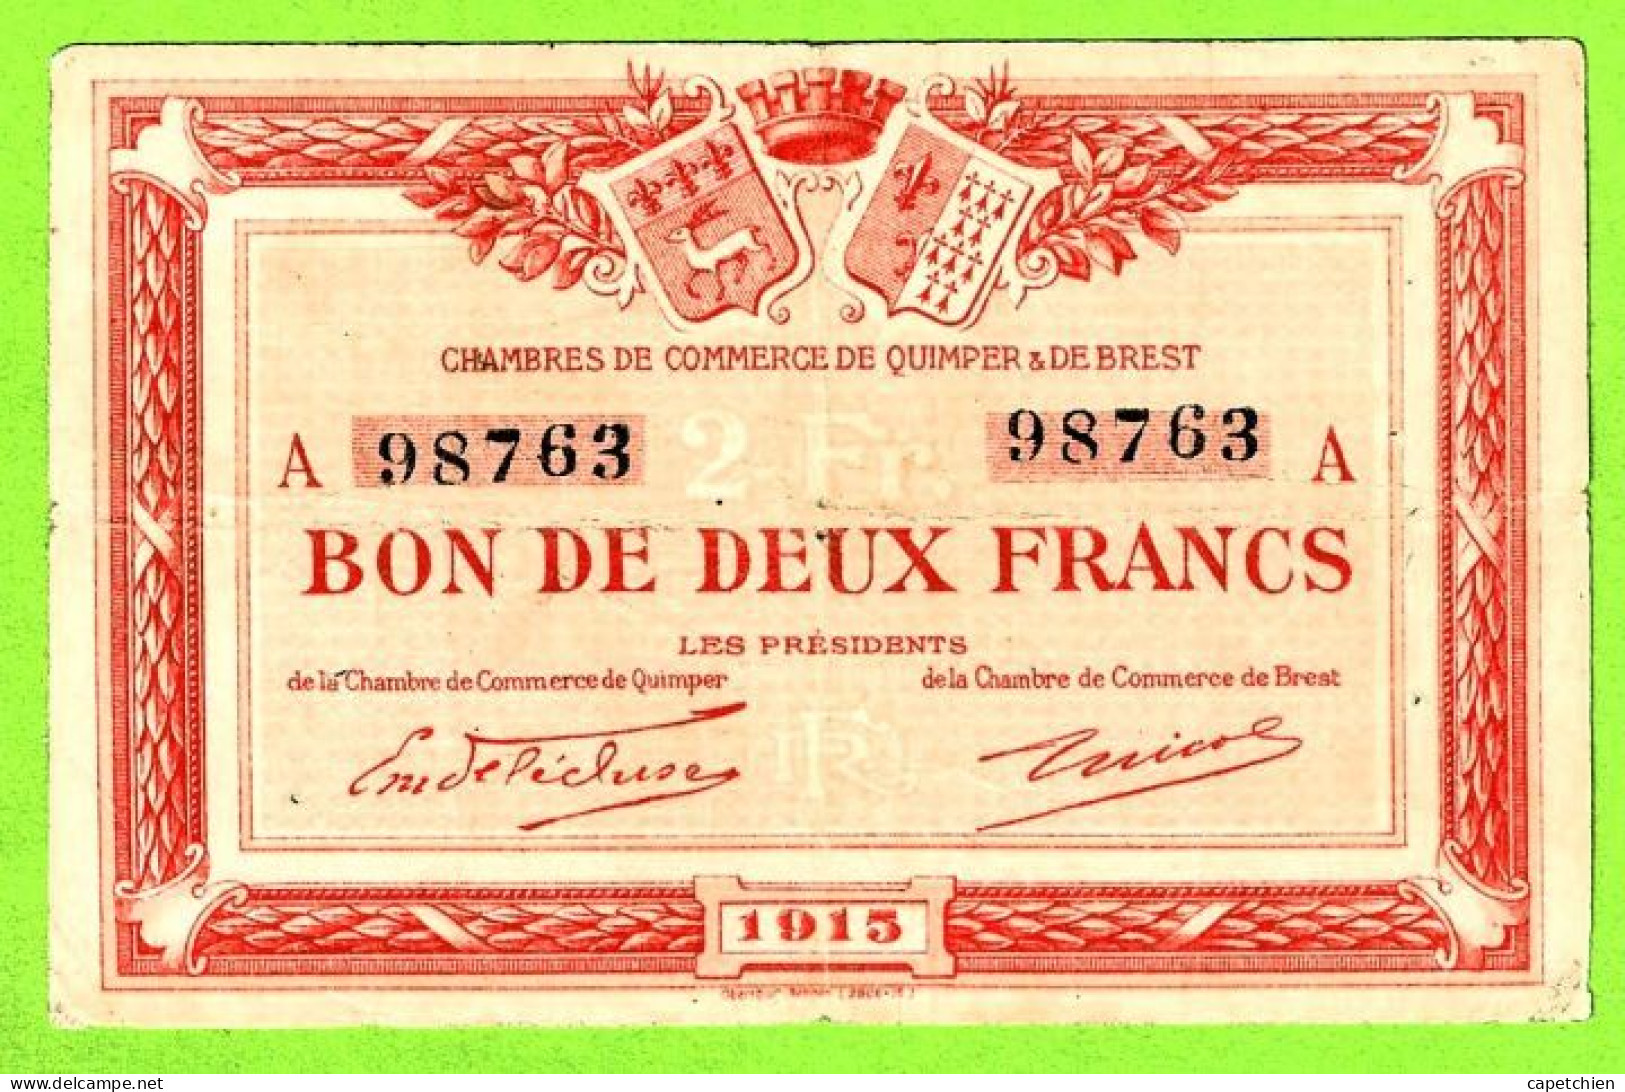 FRANCE/ CHAMBRES DE COMMERCE QUIMPER & BREST/ BON De 2 FRANCS / 1915 / 98763 :SERIE A - Chambre De Commerce